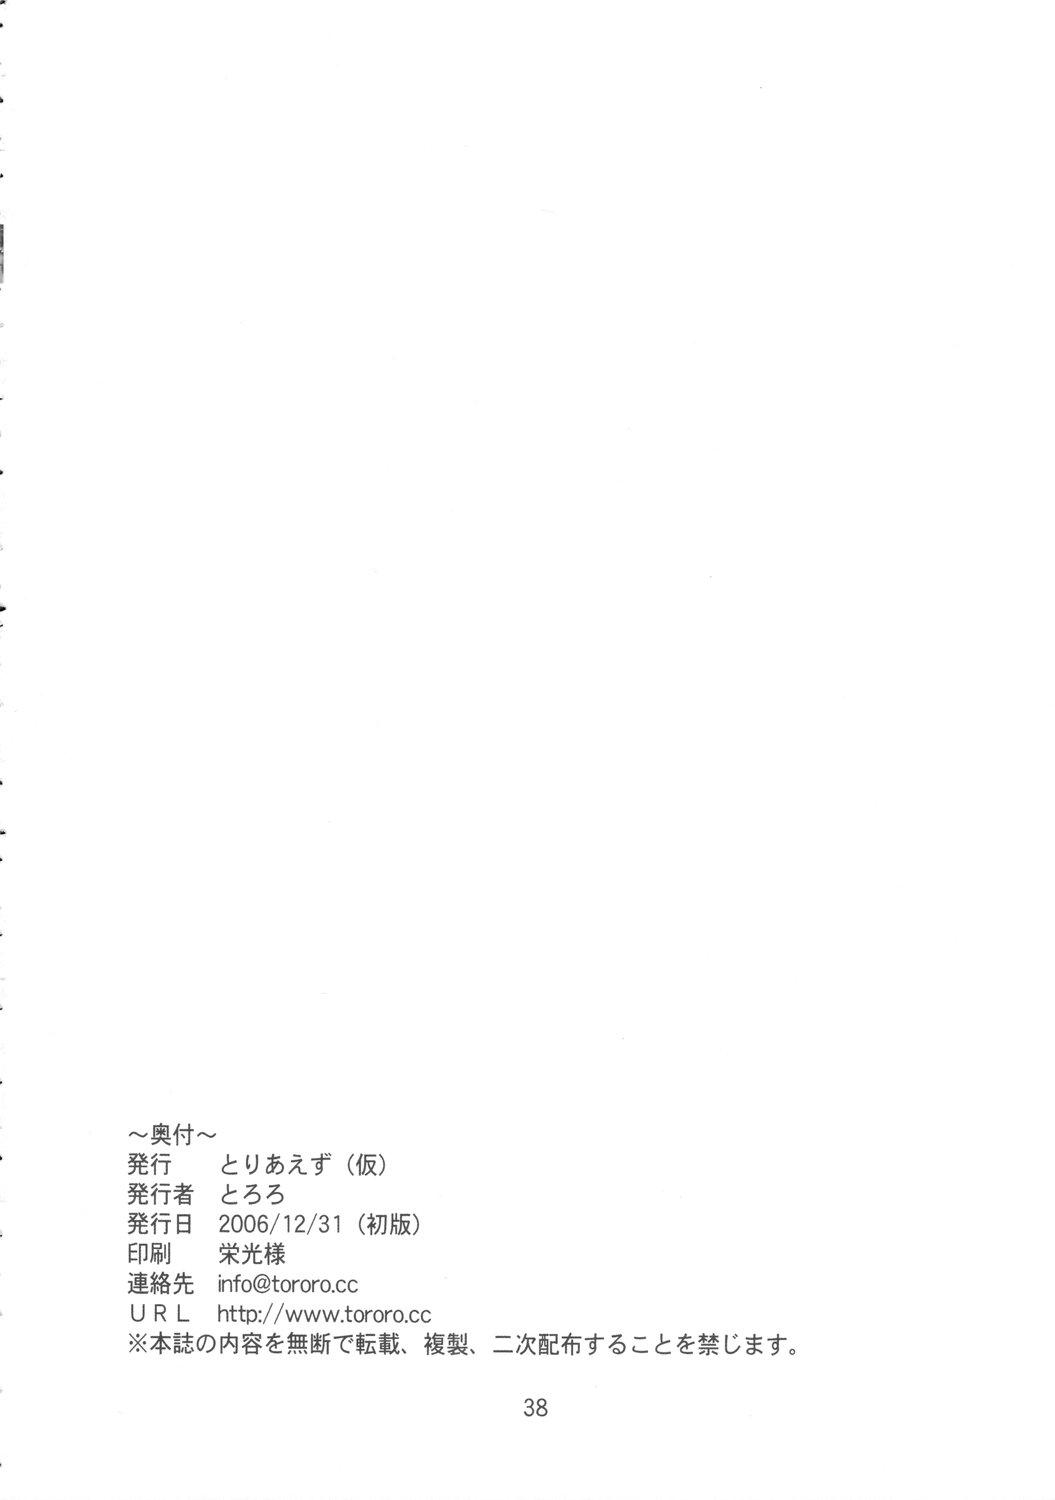 Creampie Yume no Kakera - Higurashi no naku koro ni Spread - Page 37